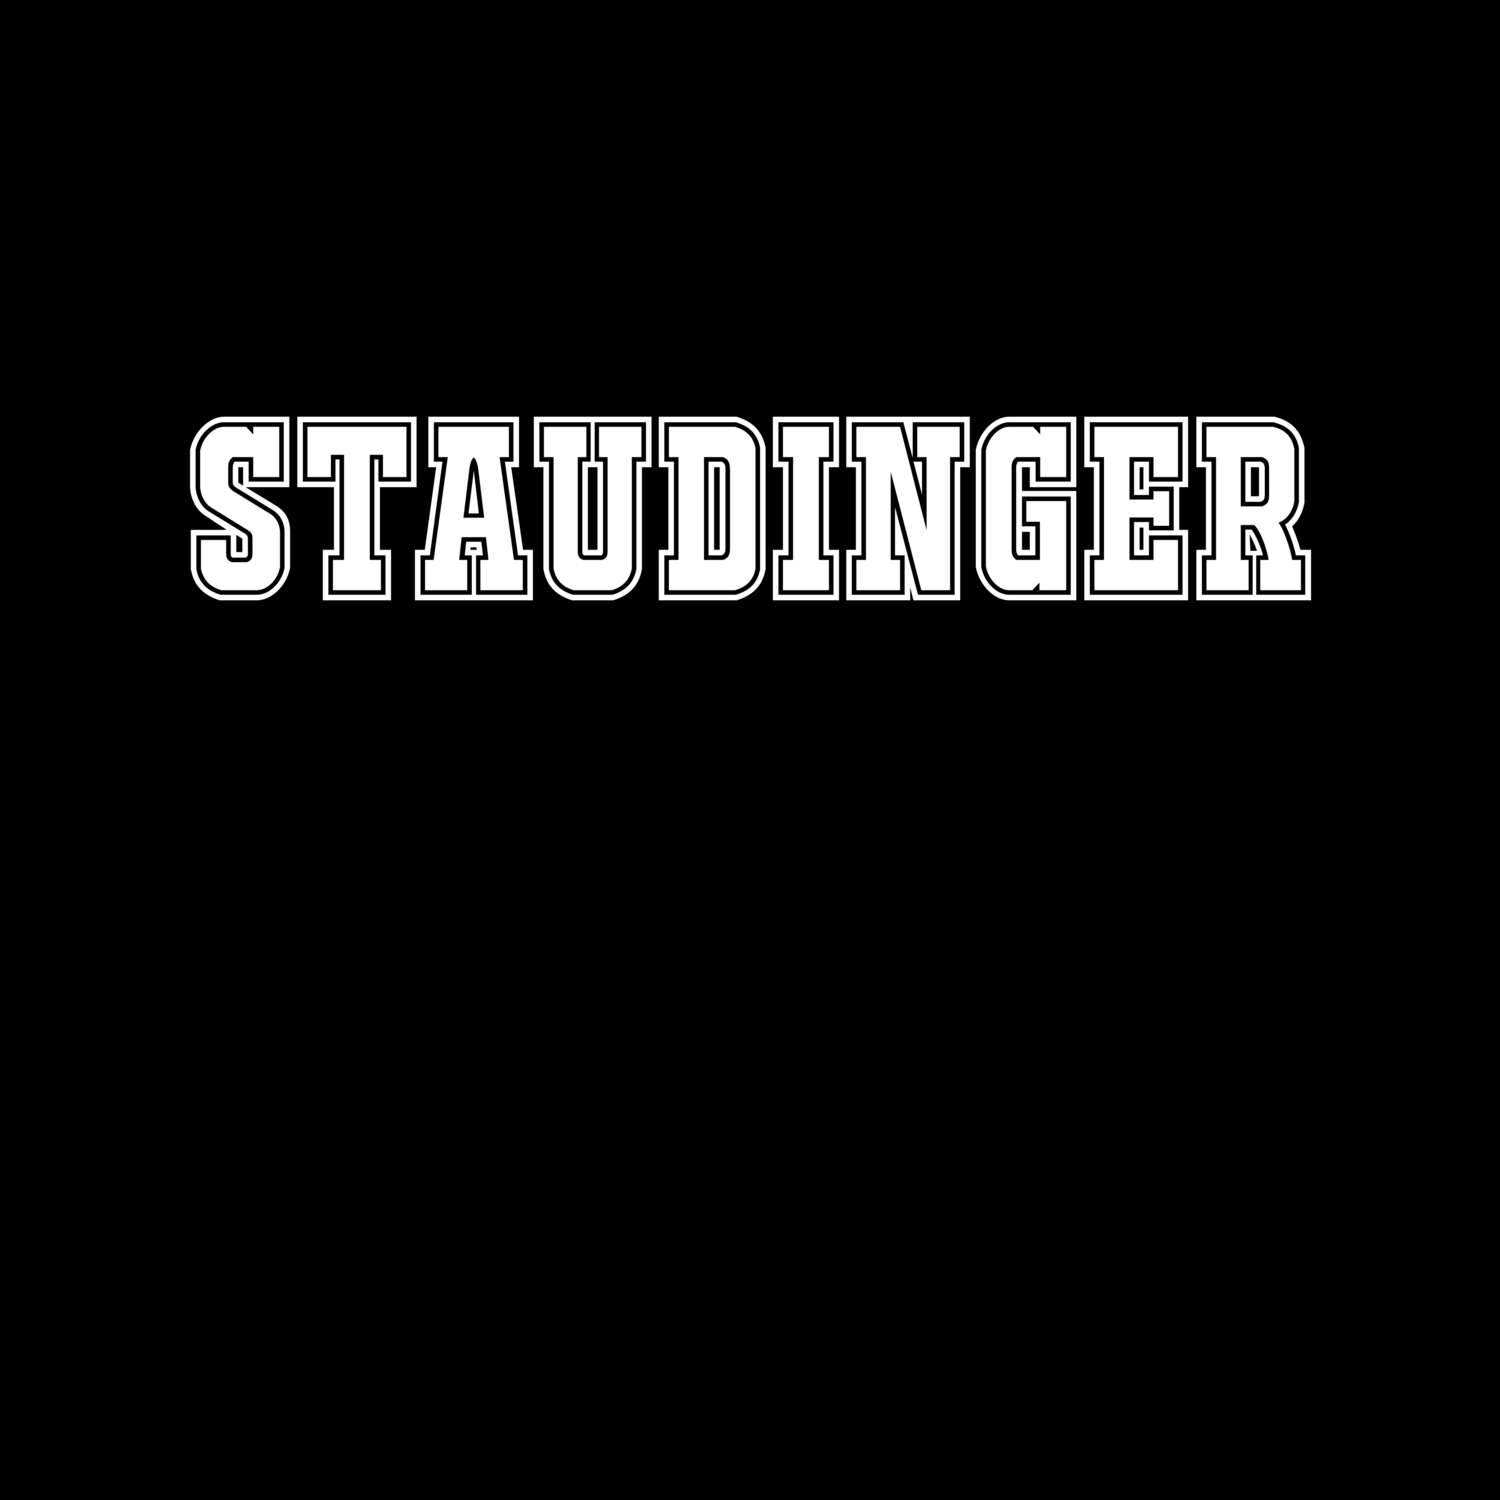 Staudinger T-Shirt »Classic«